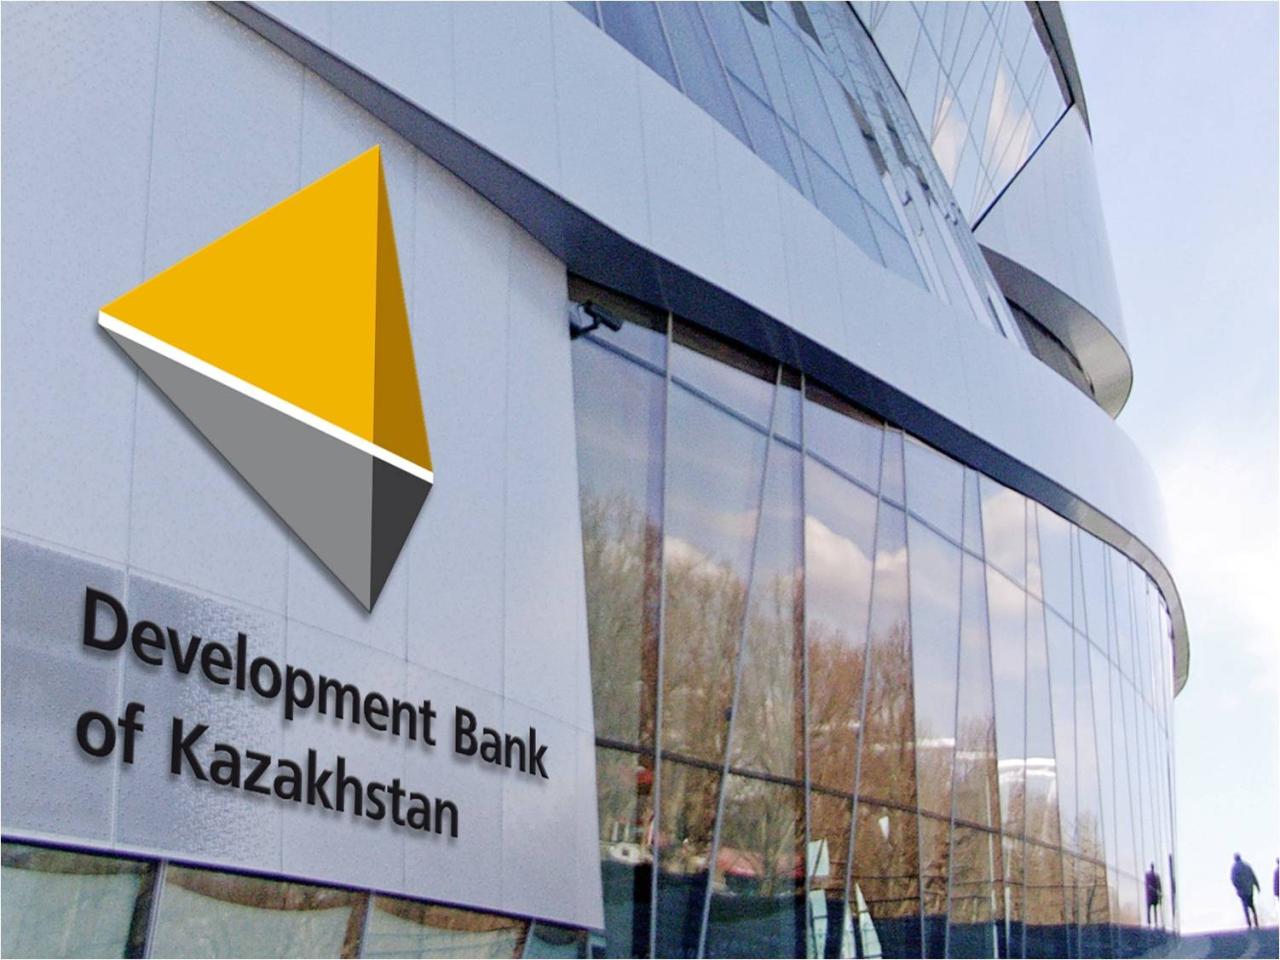 Development Bank of Kazakhstan talks 2020 priority projects